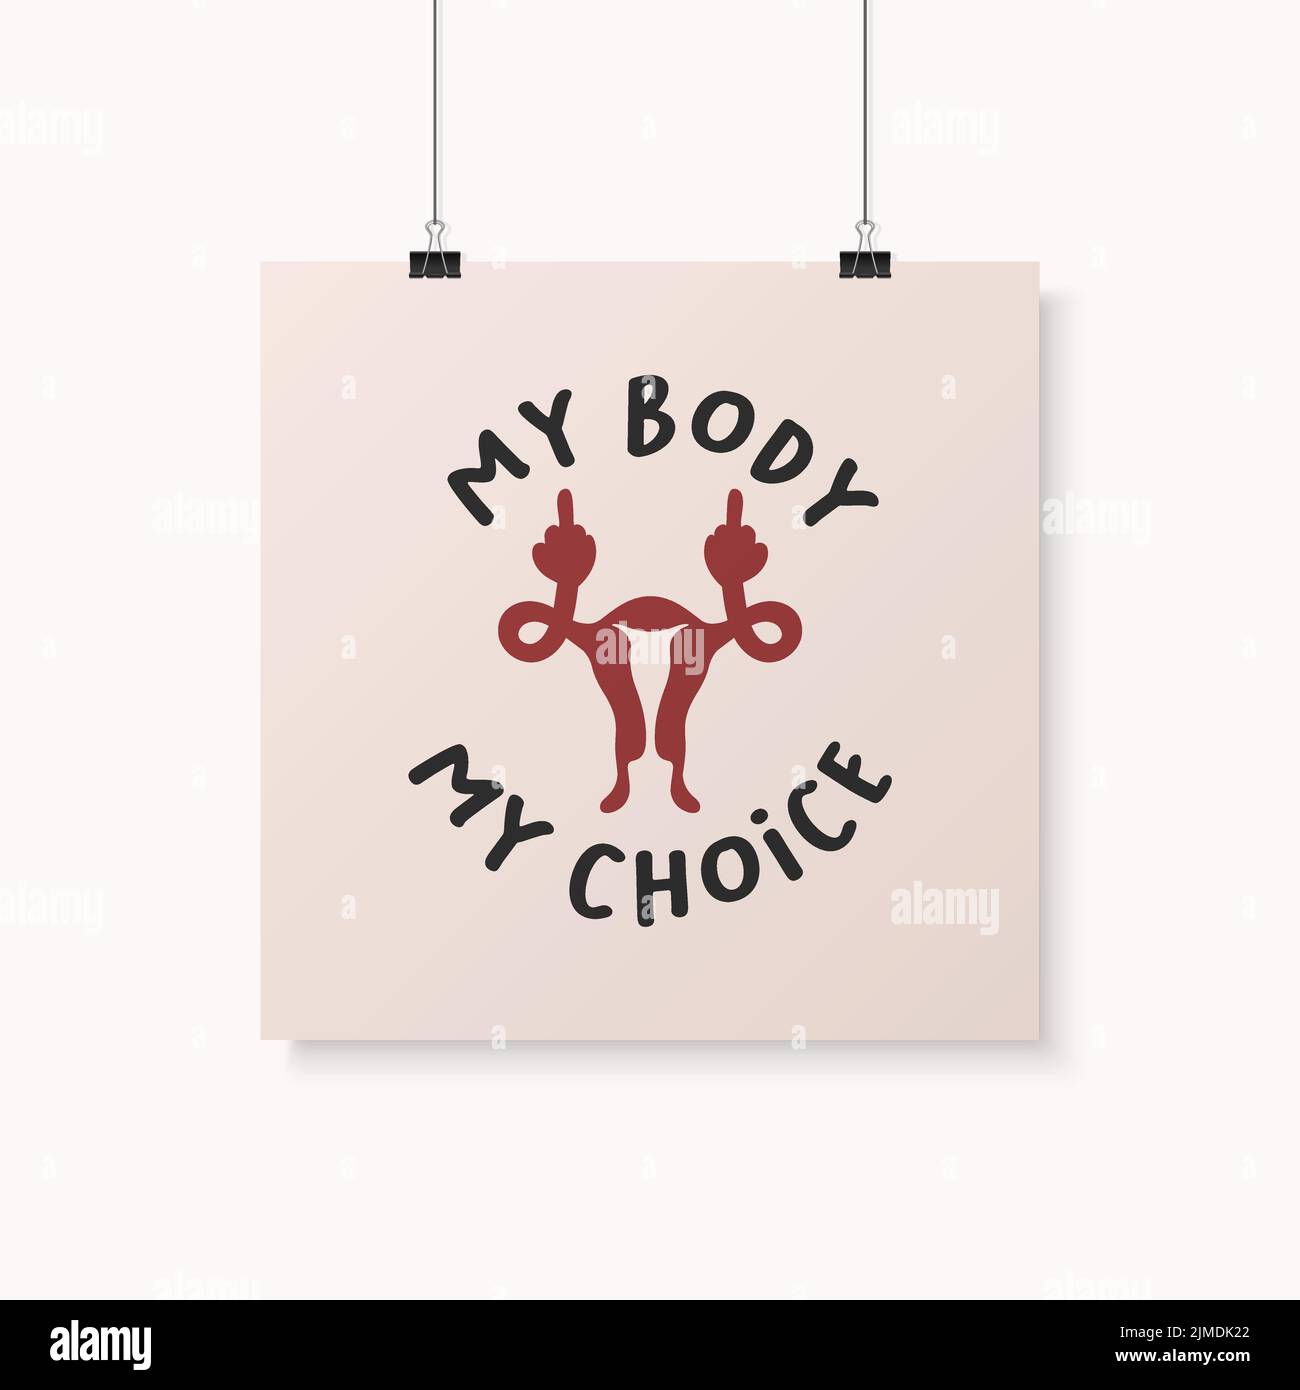 Mon corps mon choix. Wome s Rights Poster, exigeant un accès continu à l'avortement après l'interdiction des avortements, Roe vs Wade. Protestation, féminisme Illustration de Vecteur